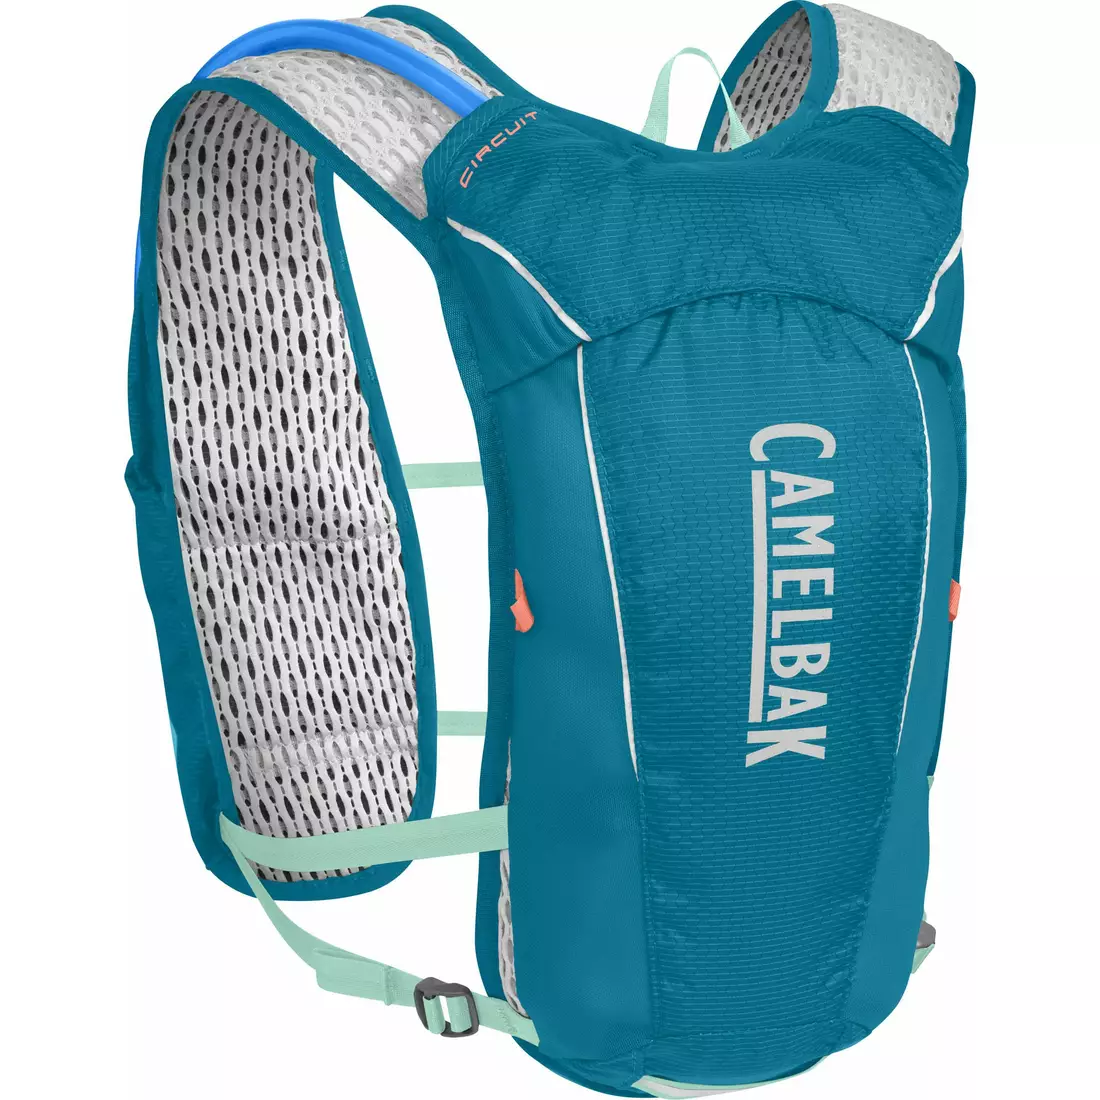 Camelbak SS18 běžecký batoh s vodním vakem Circuit Vest 50oz /1,5L Teal/Ice Green 1138403000